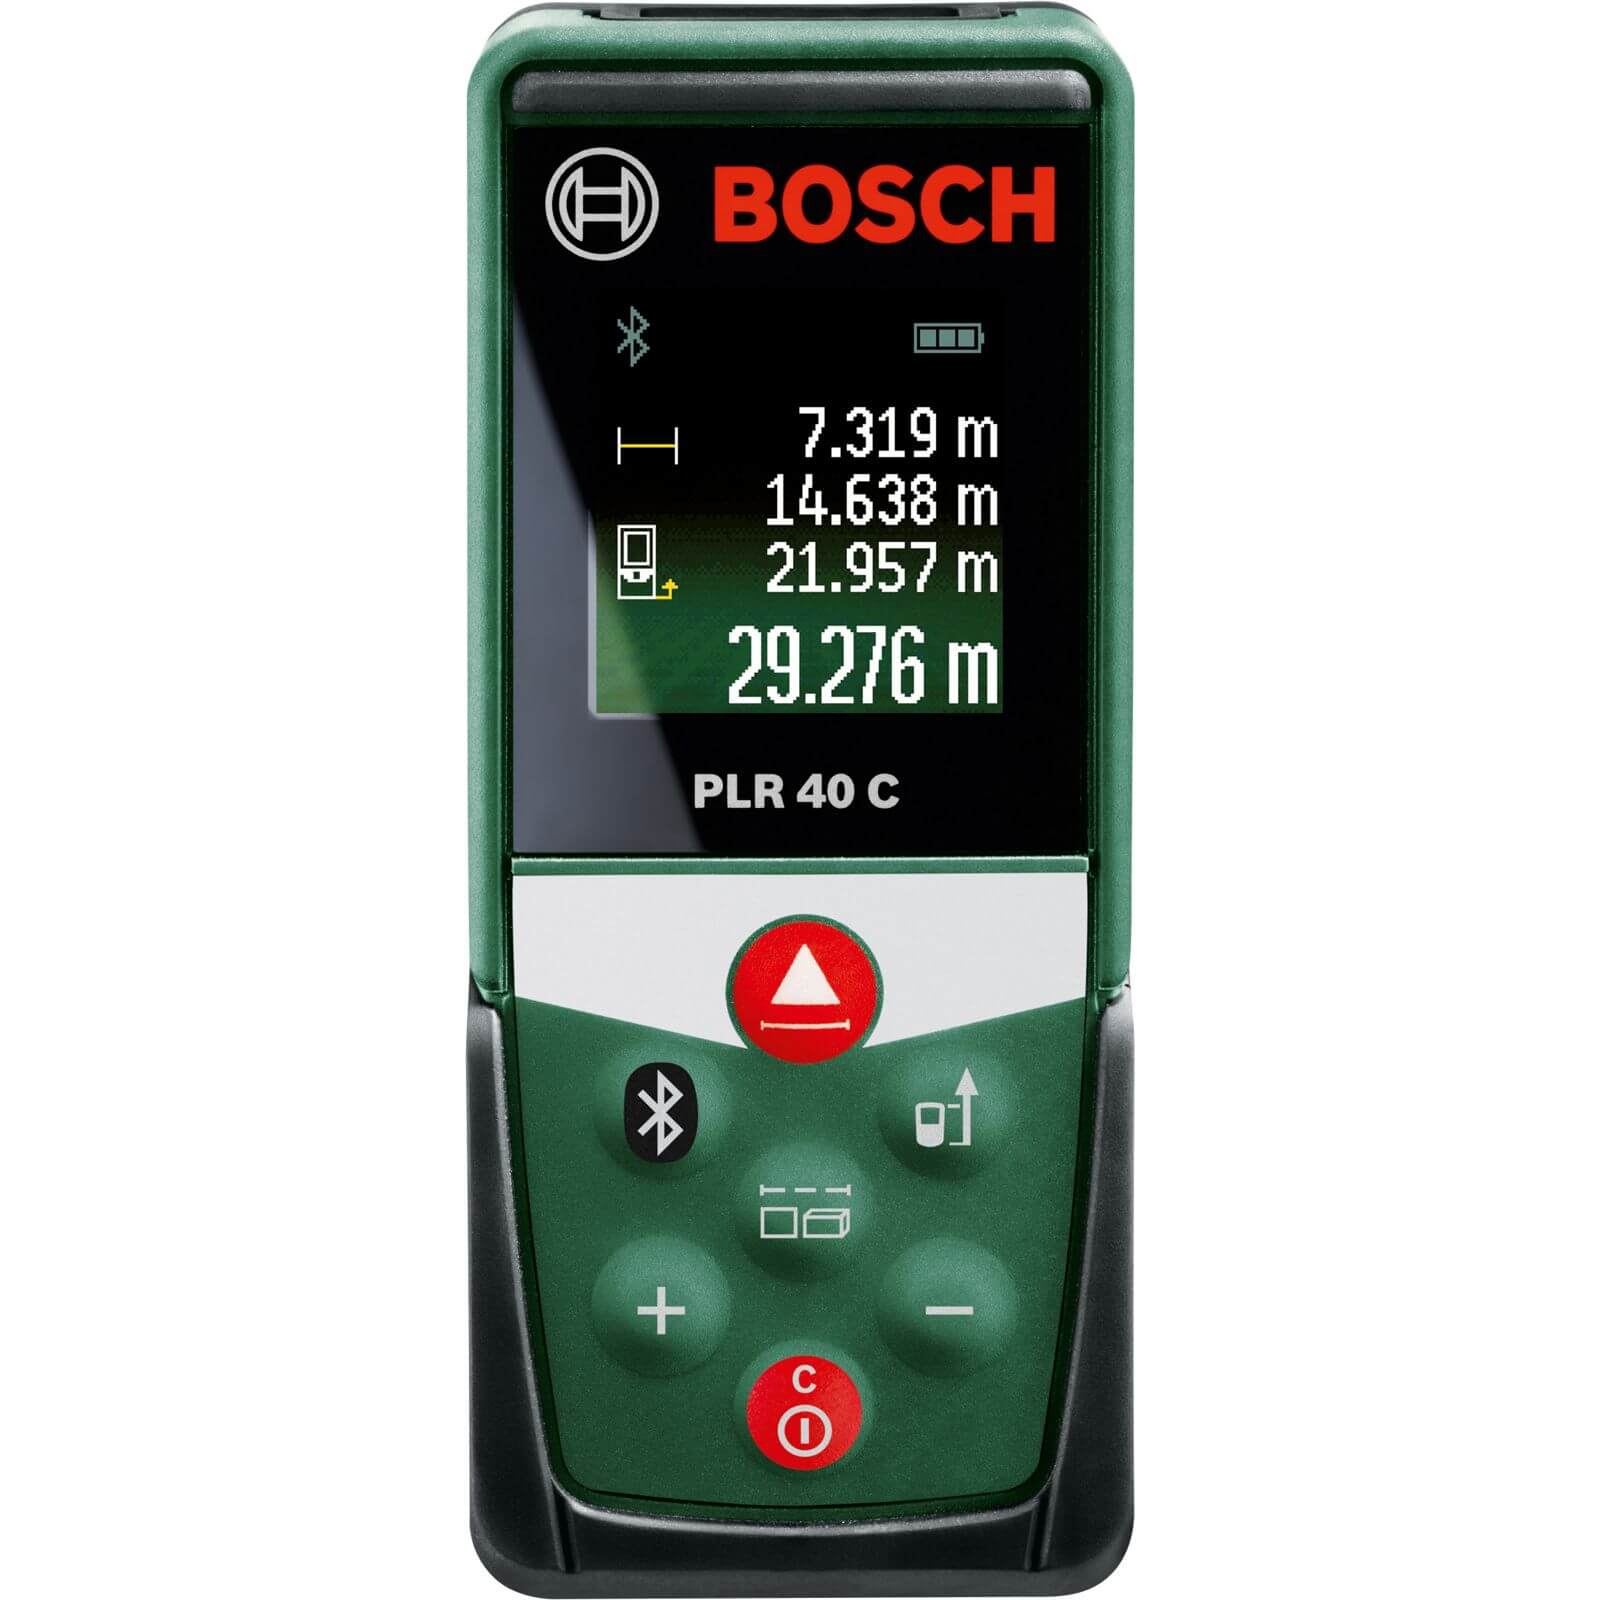 Bosch PLR 40C Digital Laser Measure